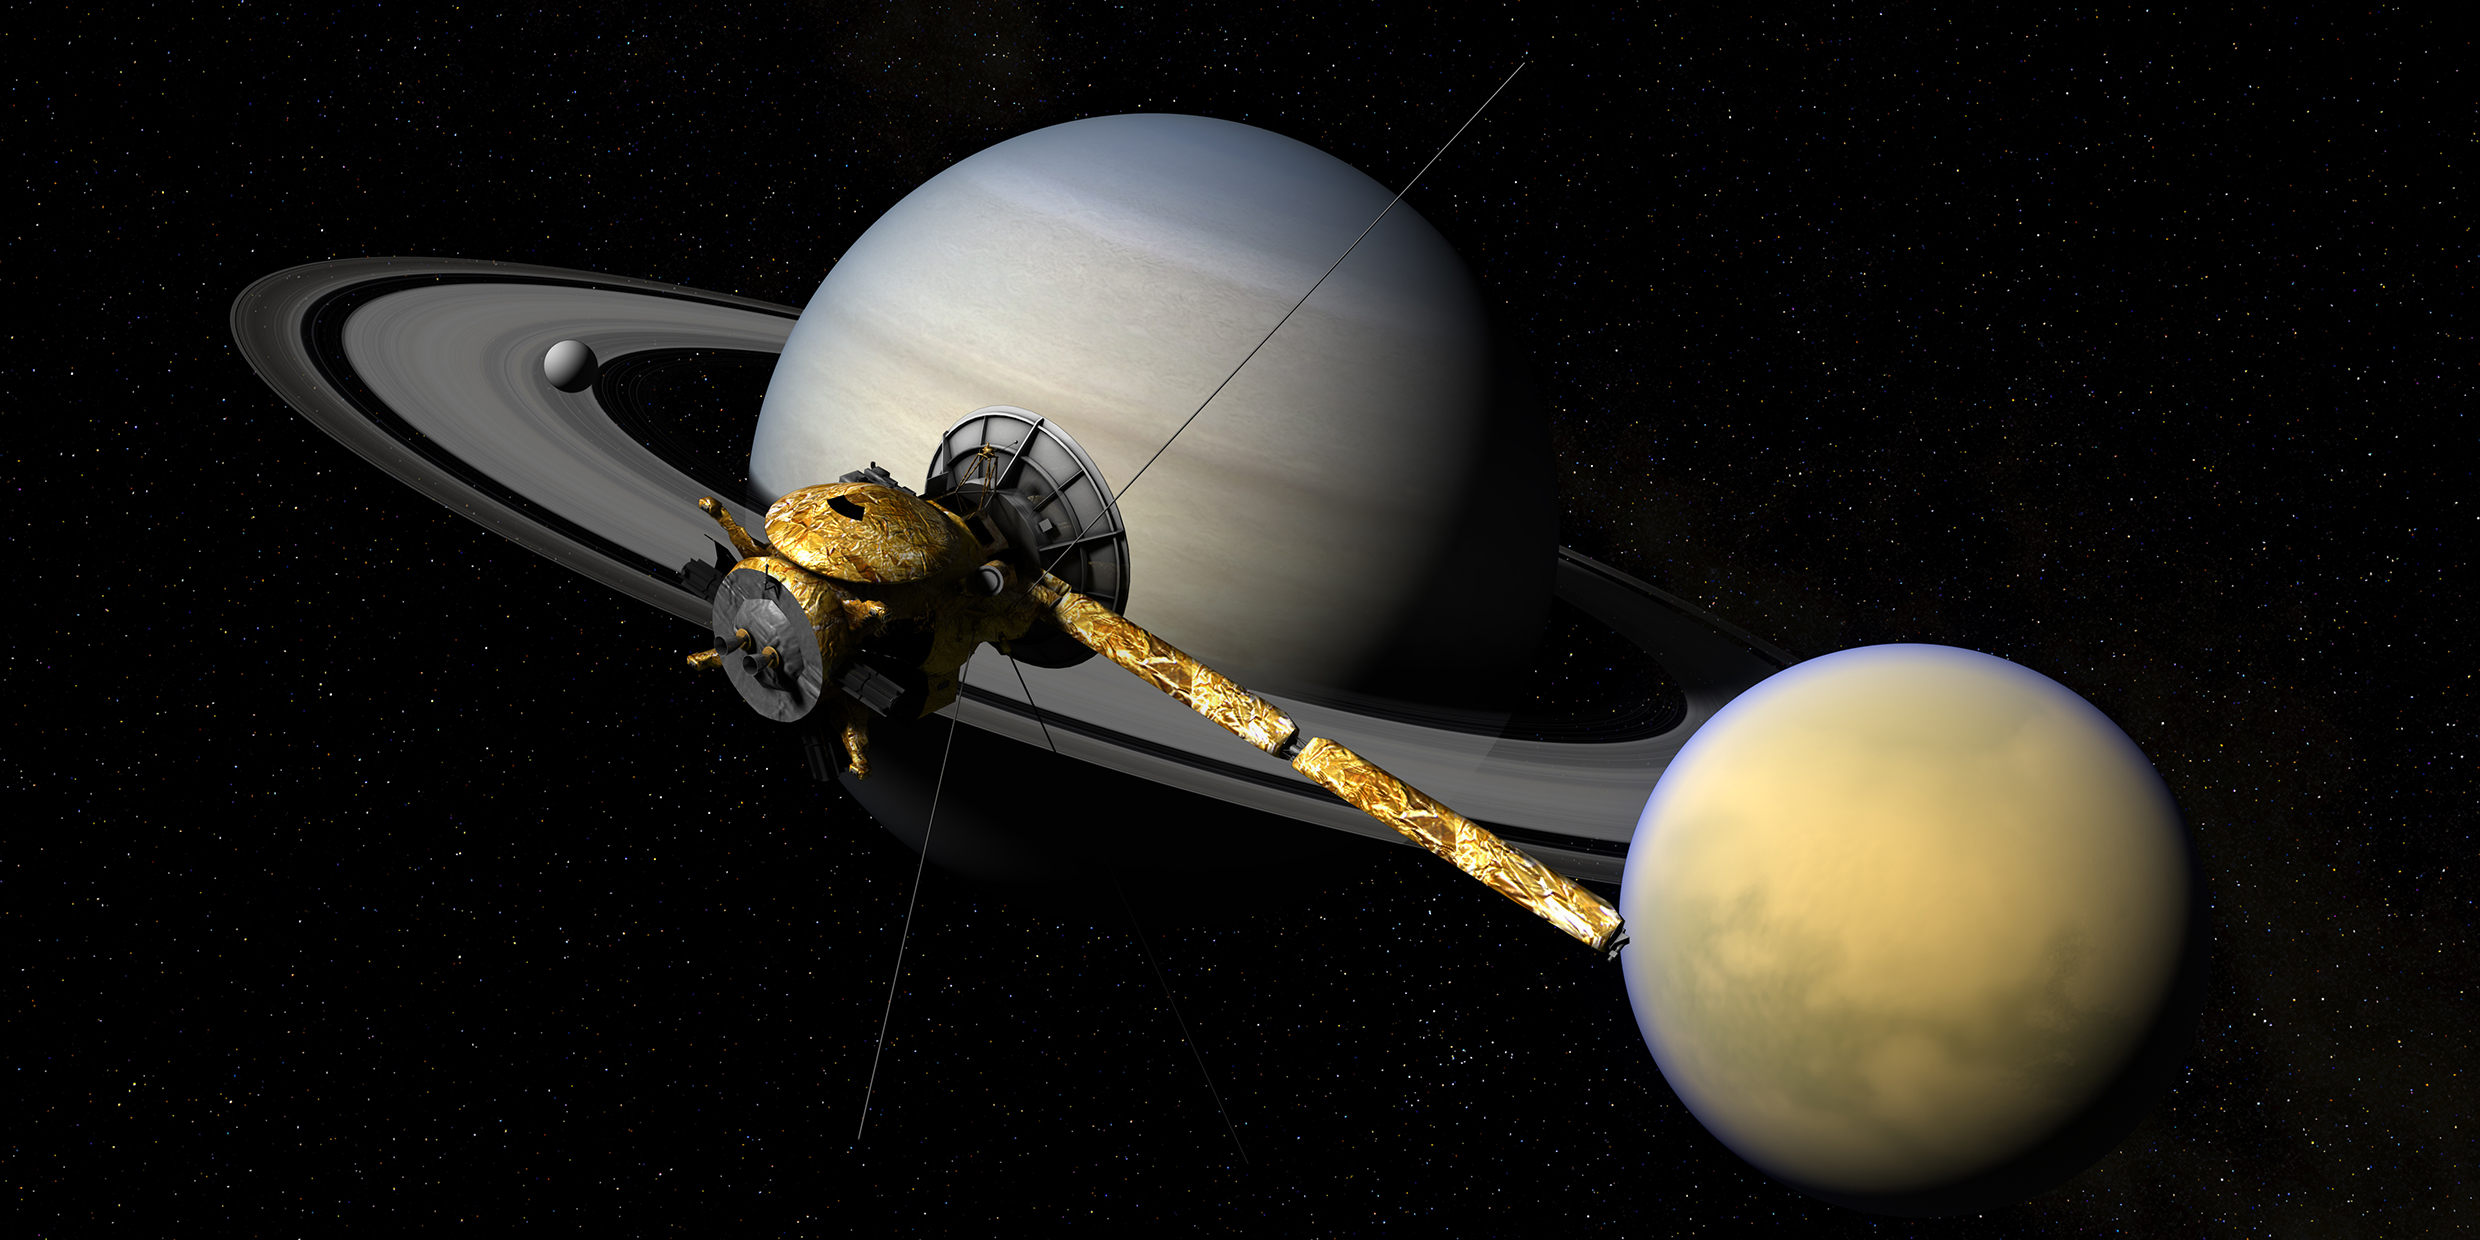 Computer-generated image of the Cassini spacecraft orbiting Saturn